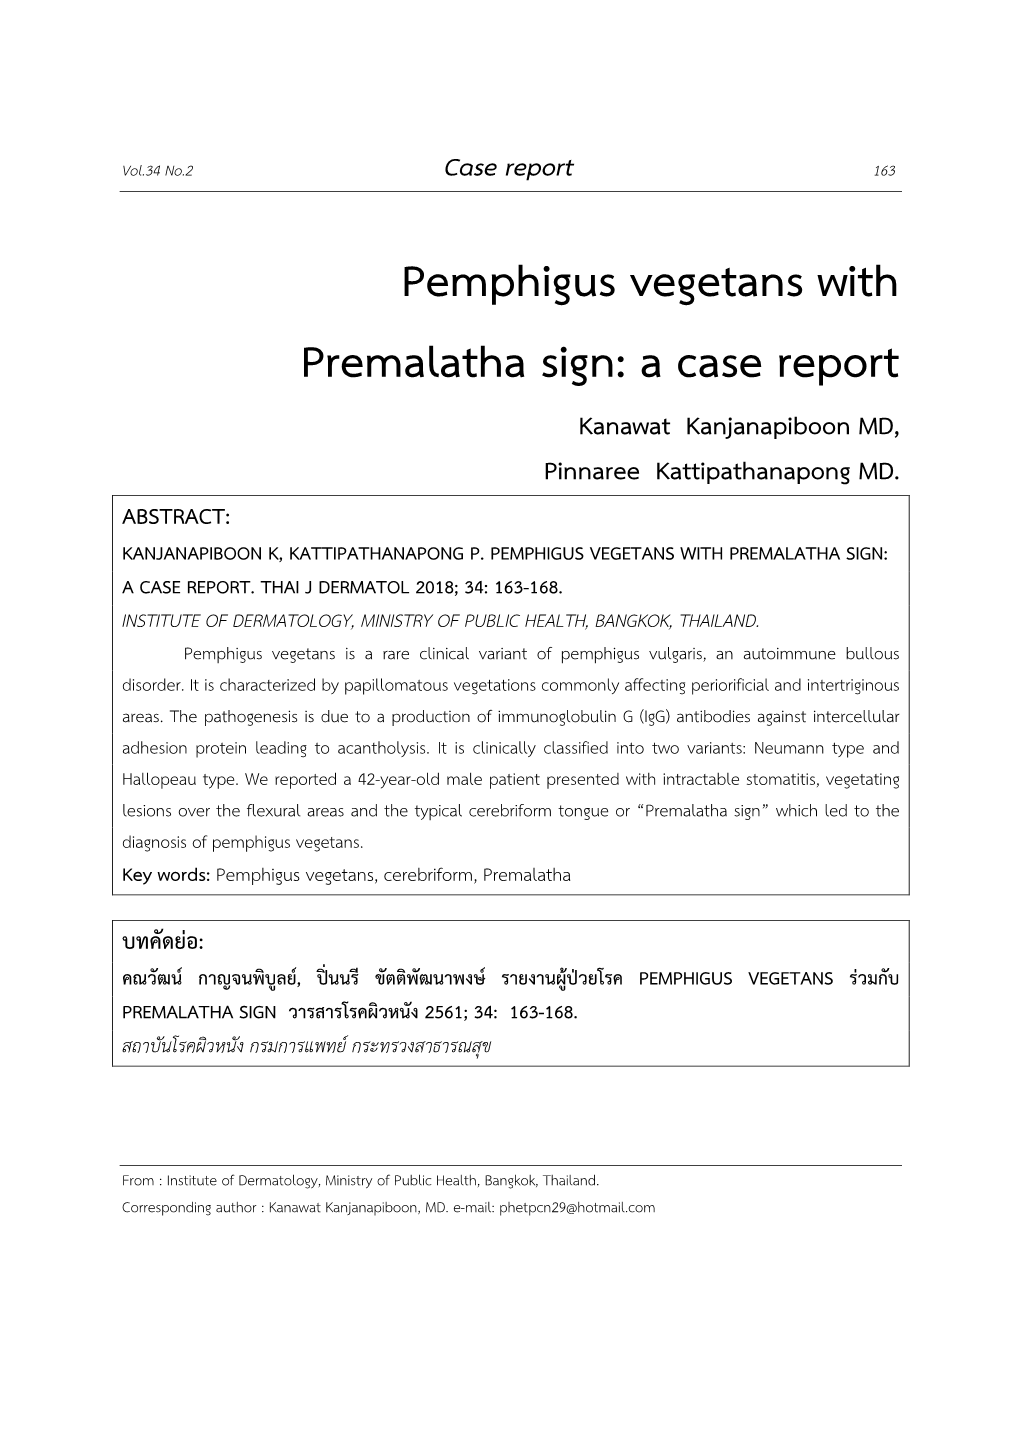 Pemphigus Vegetans with Premalatha Sign: a Case Report Kanawat Kanjanapiboon MD, Pinnaree Kattipathanapong MD